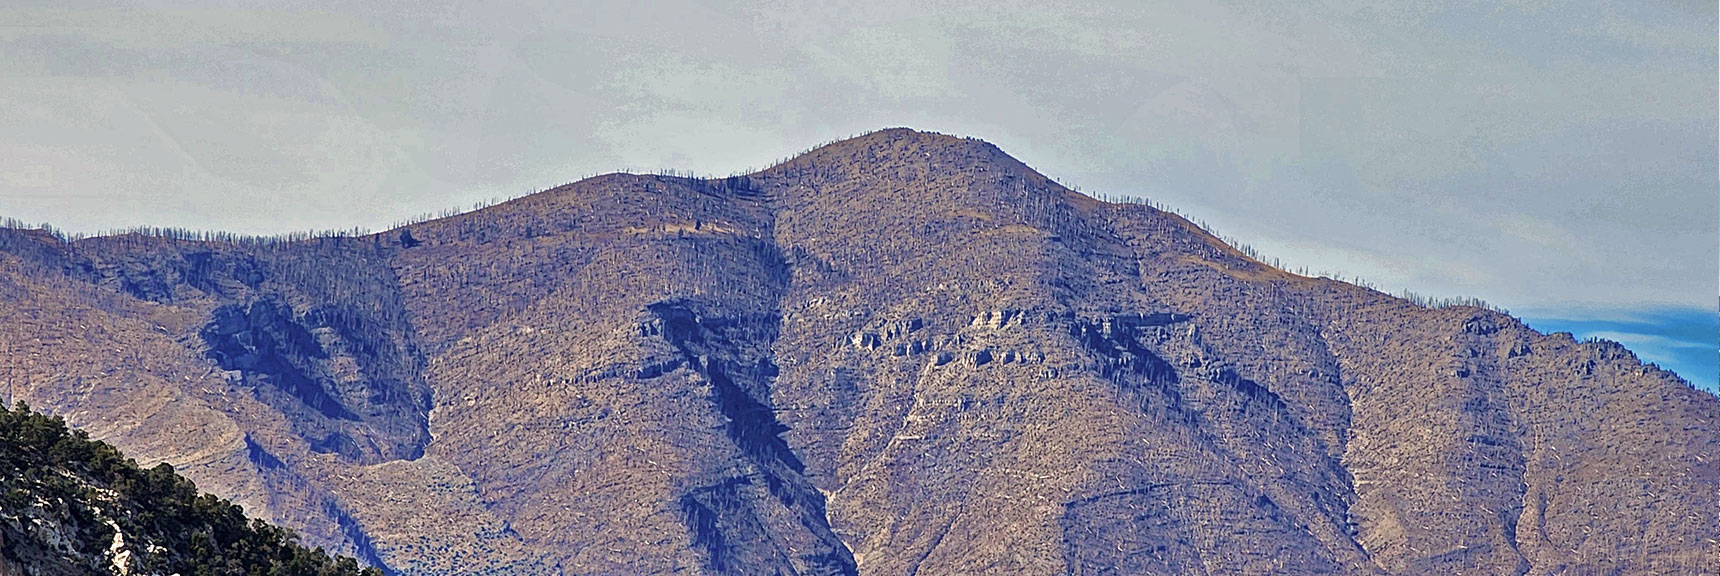 Zoom in on Griffith Peak | North Upper Crest Ridgeline | Rainbow Mountain Wilderness, Nevada